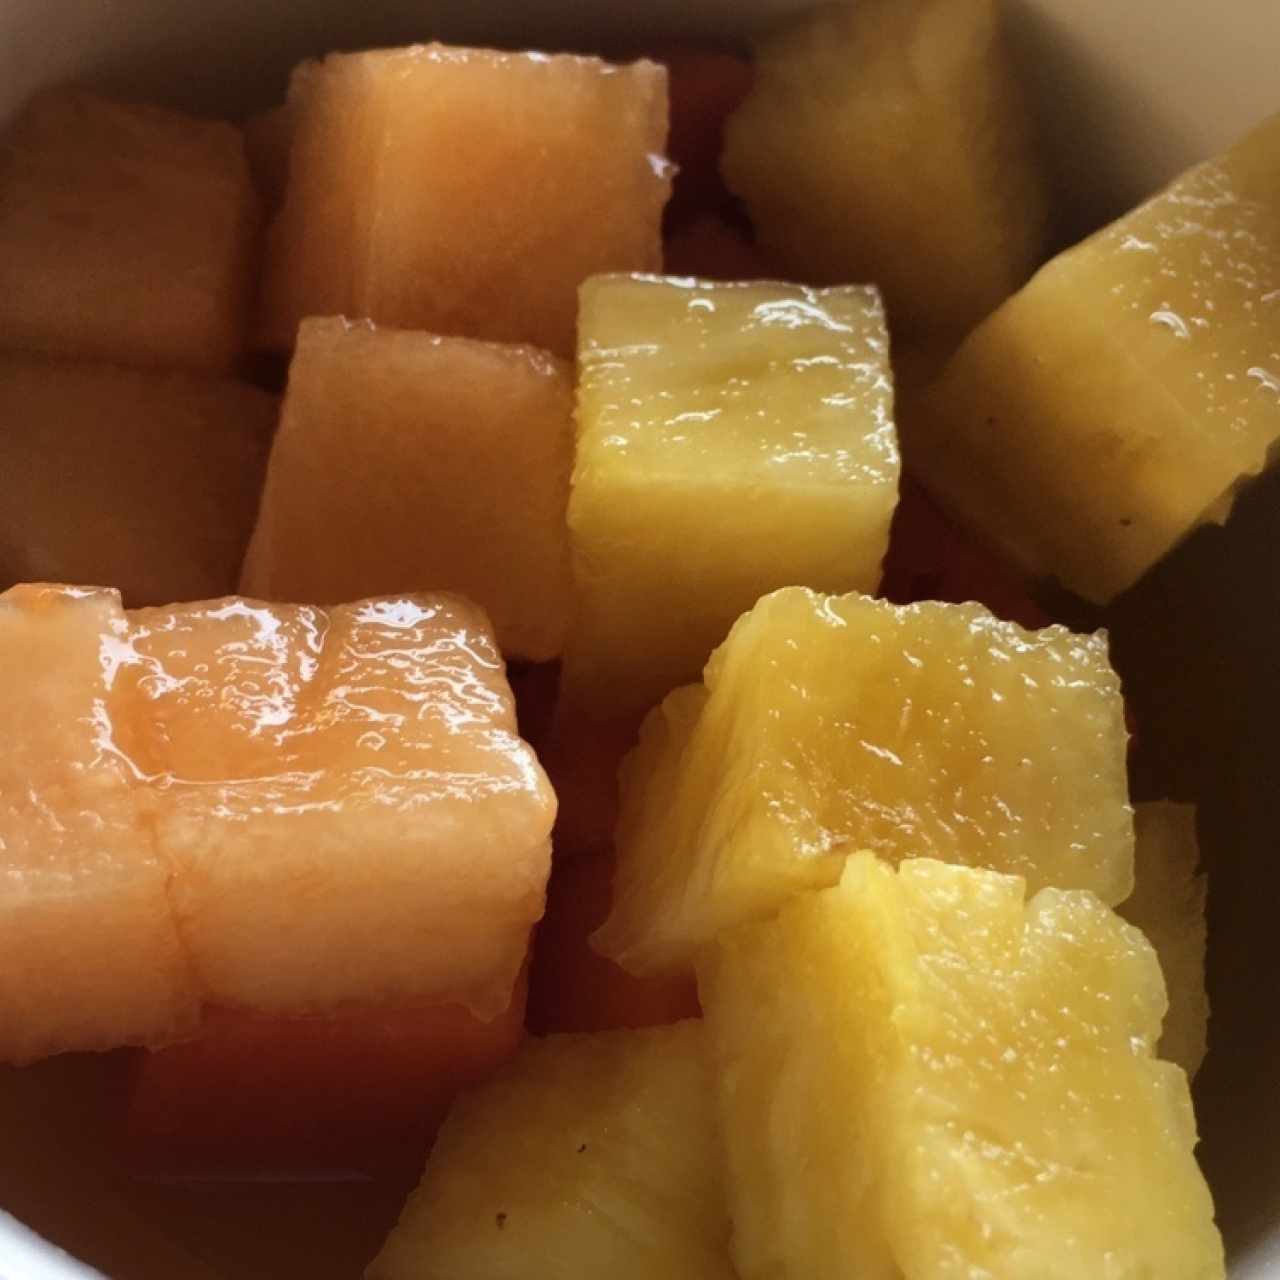 Plato de frutas frescas: papaya, melon y piña